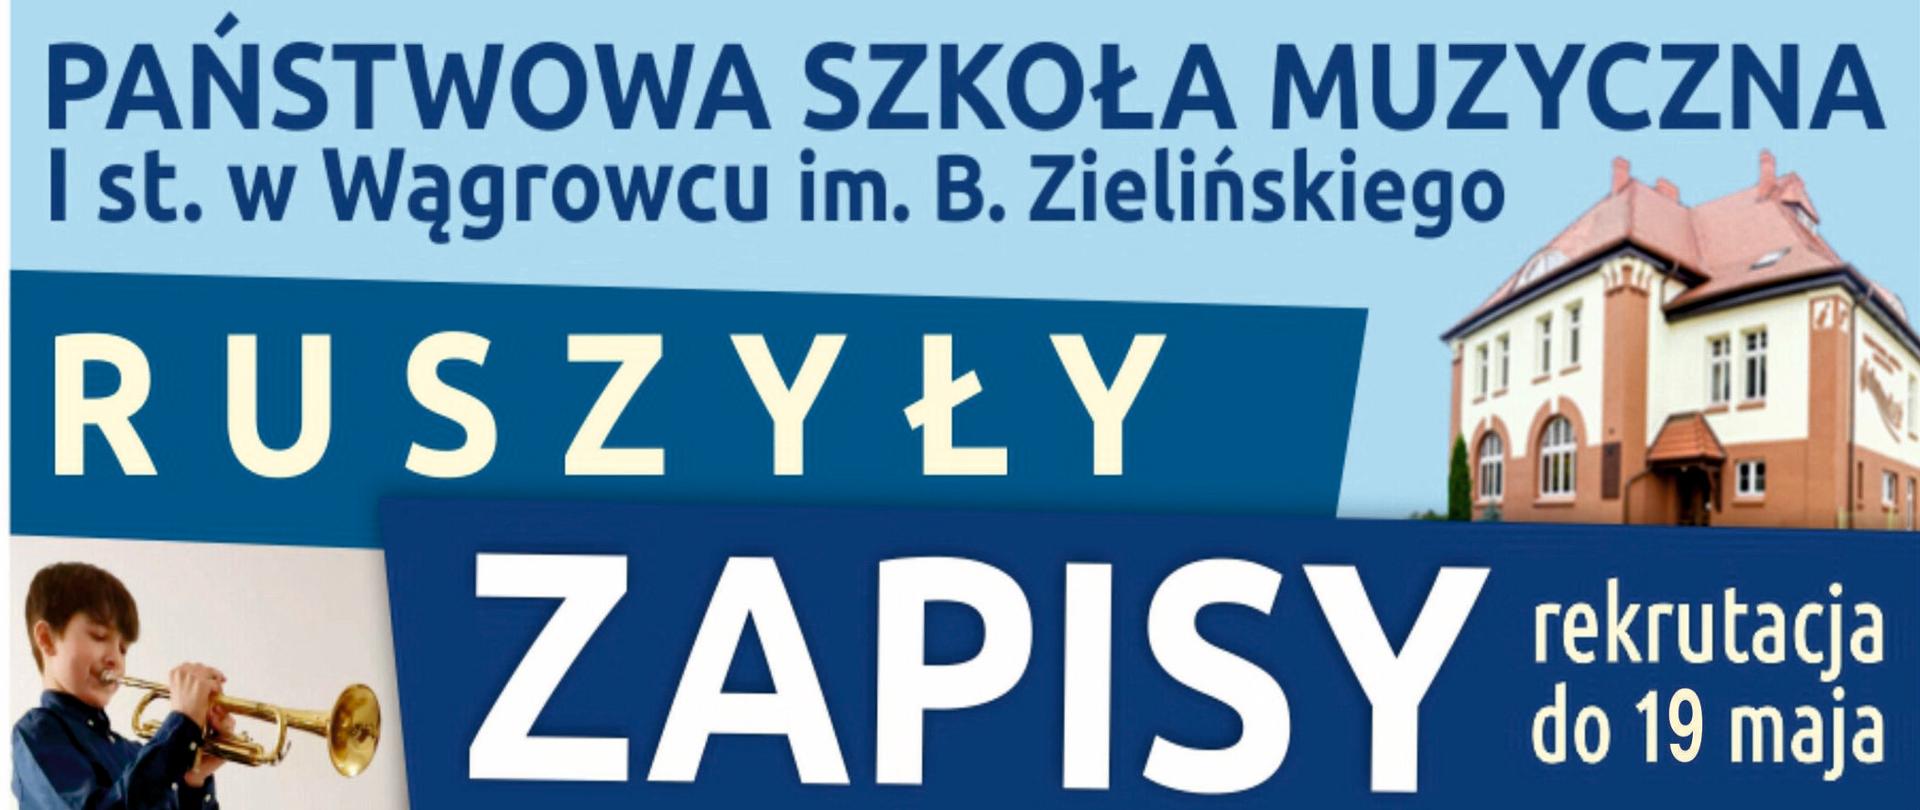 Plakat w odcieniach barwy niebiesko-granatowej informujący o początku zapisów rekrutacyjnych do Państwowej Szkoły Muzycznej I st. w Wągrowcu. Rekrutacja do 19 maja 2023r.